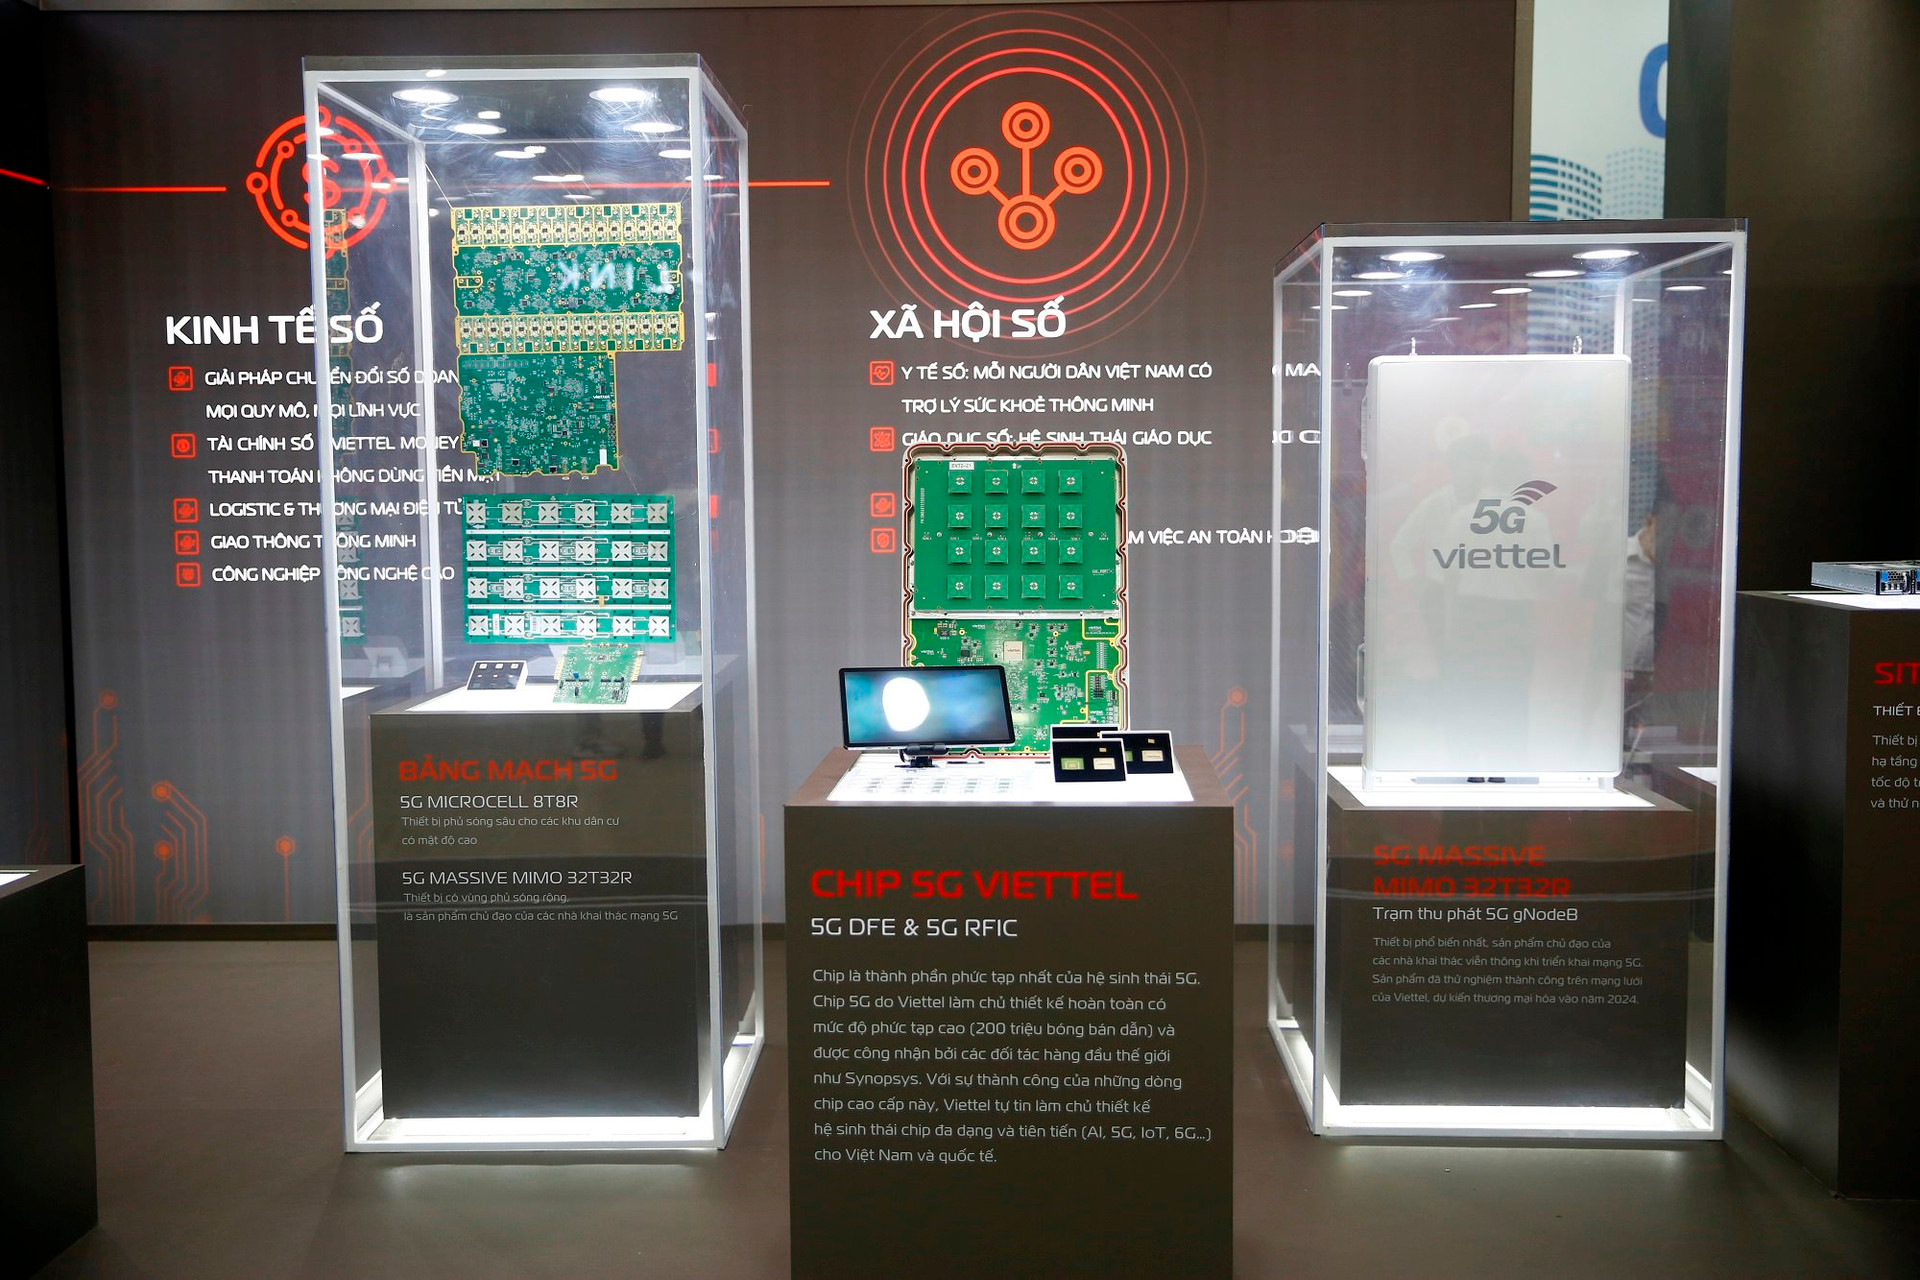 Viettel, Samsung, SpaceX hội tụ tại Triển lãm Quốc tế Đổi mới sáng tạo Việt Nam 2023: Trình diễn hàng loạt công nghệ mới, công bố chip 5G - Ảnh 1.